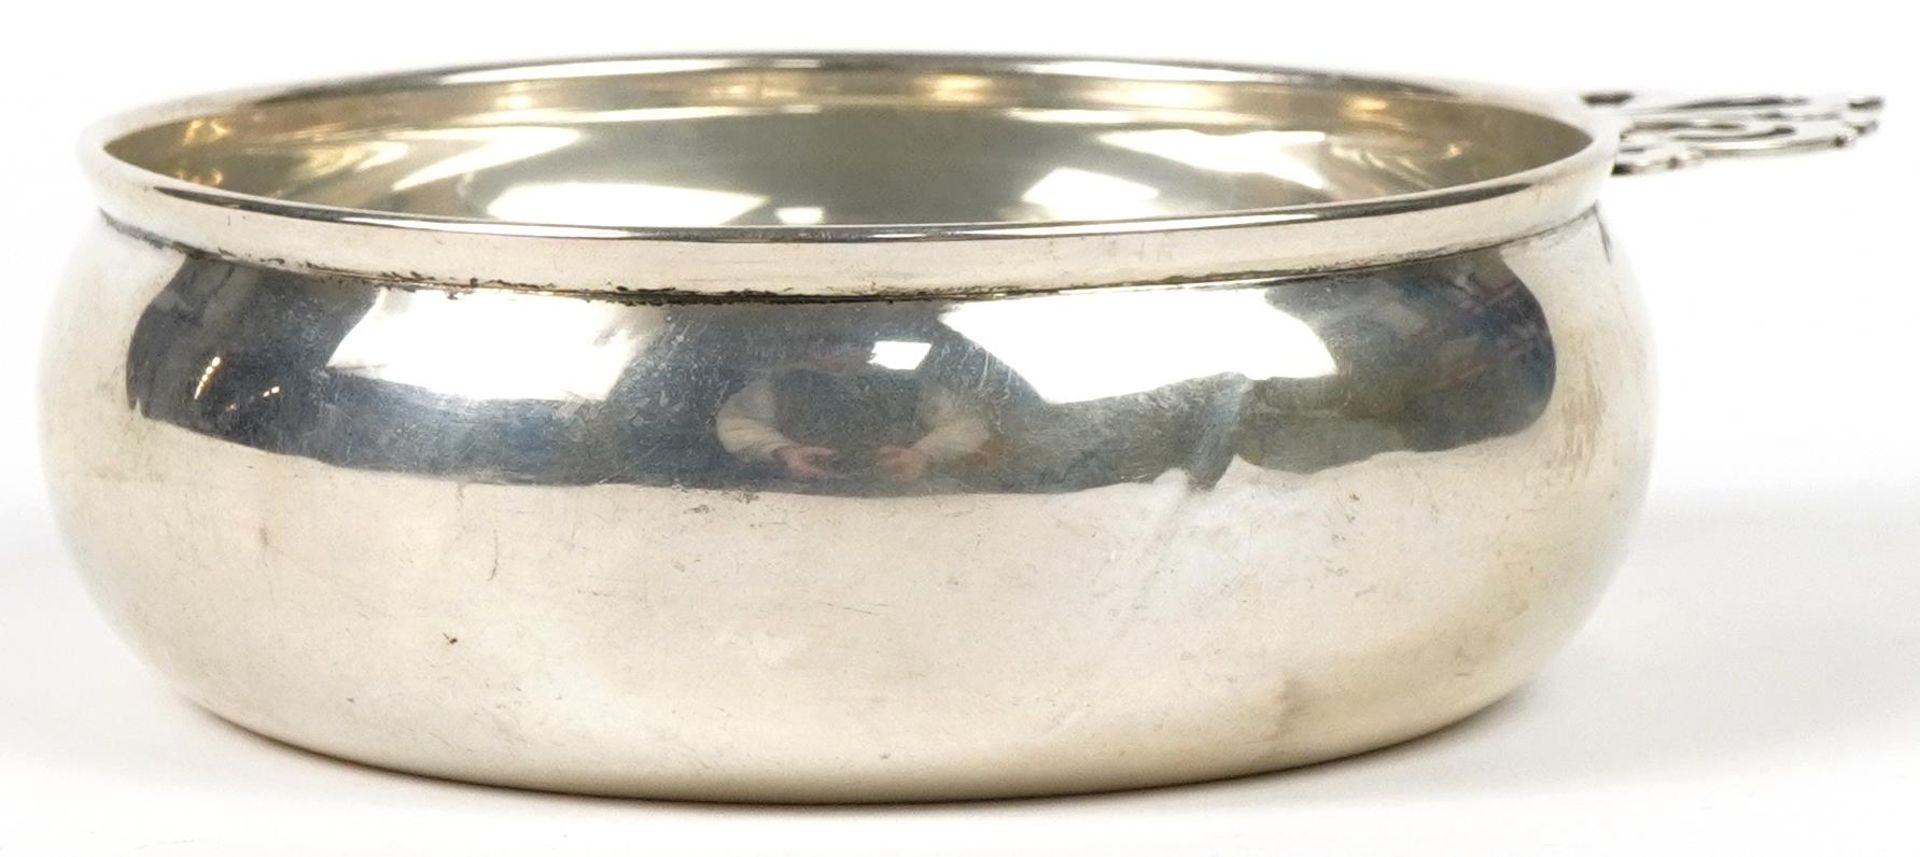 Lunt, sterling silver porringer numbered 589, 16cm in length, 104.0g : For further information on